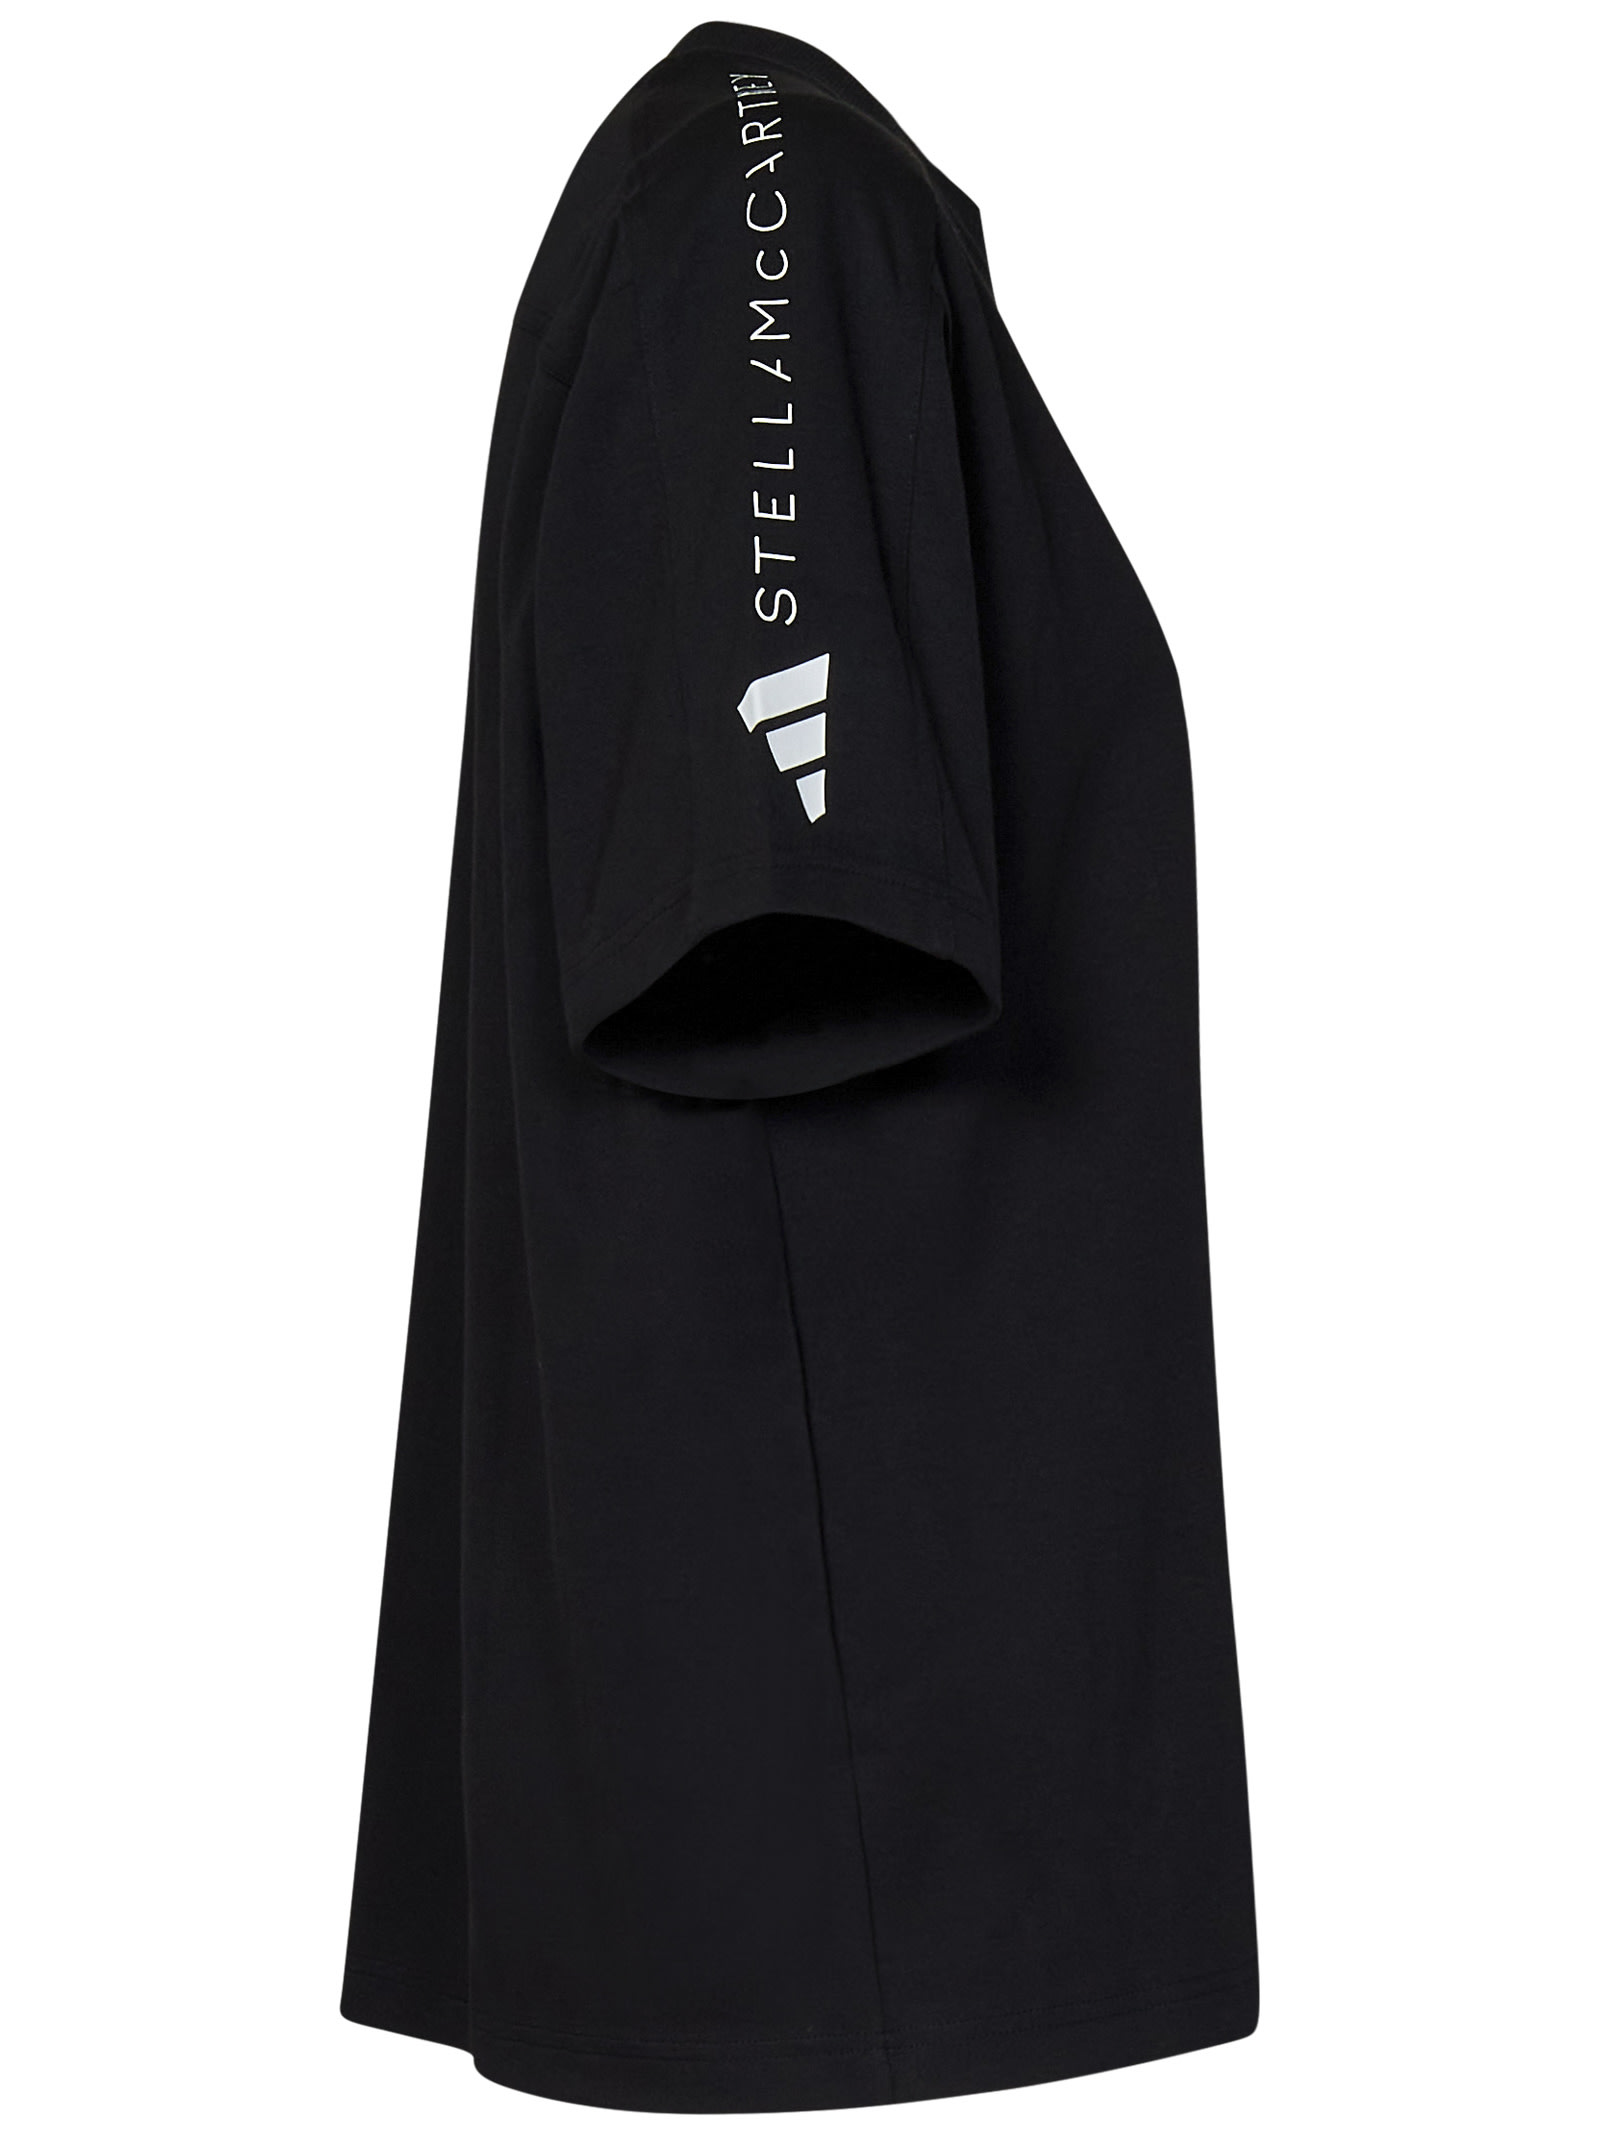 Shop Adidas By Stella Mccartney By Stella Mccartney T-shirt In Black